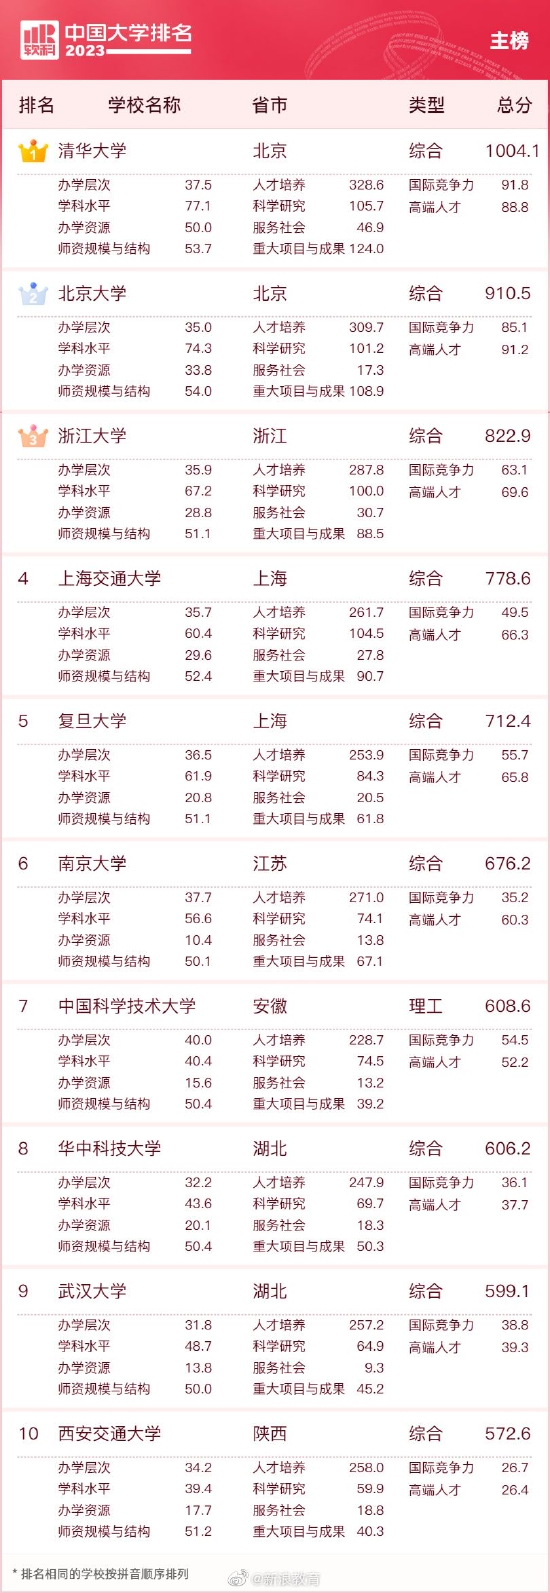 2023中国大学排名公布 清华北大浙大连续9年蝉联三甲 第1张